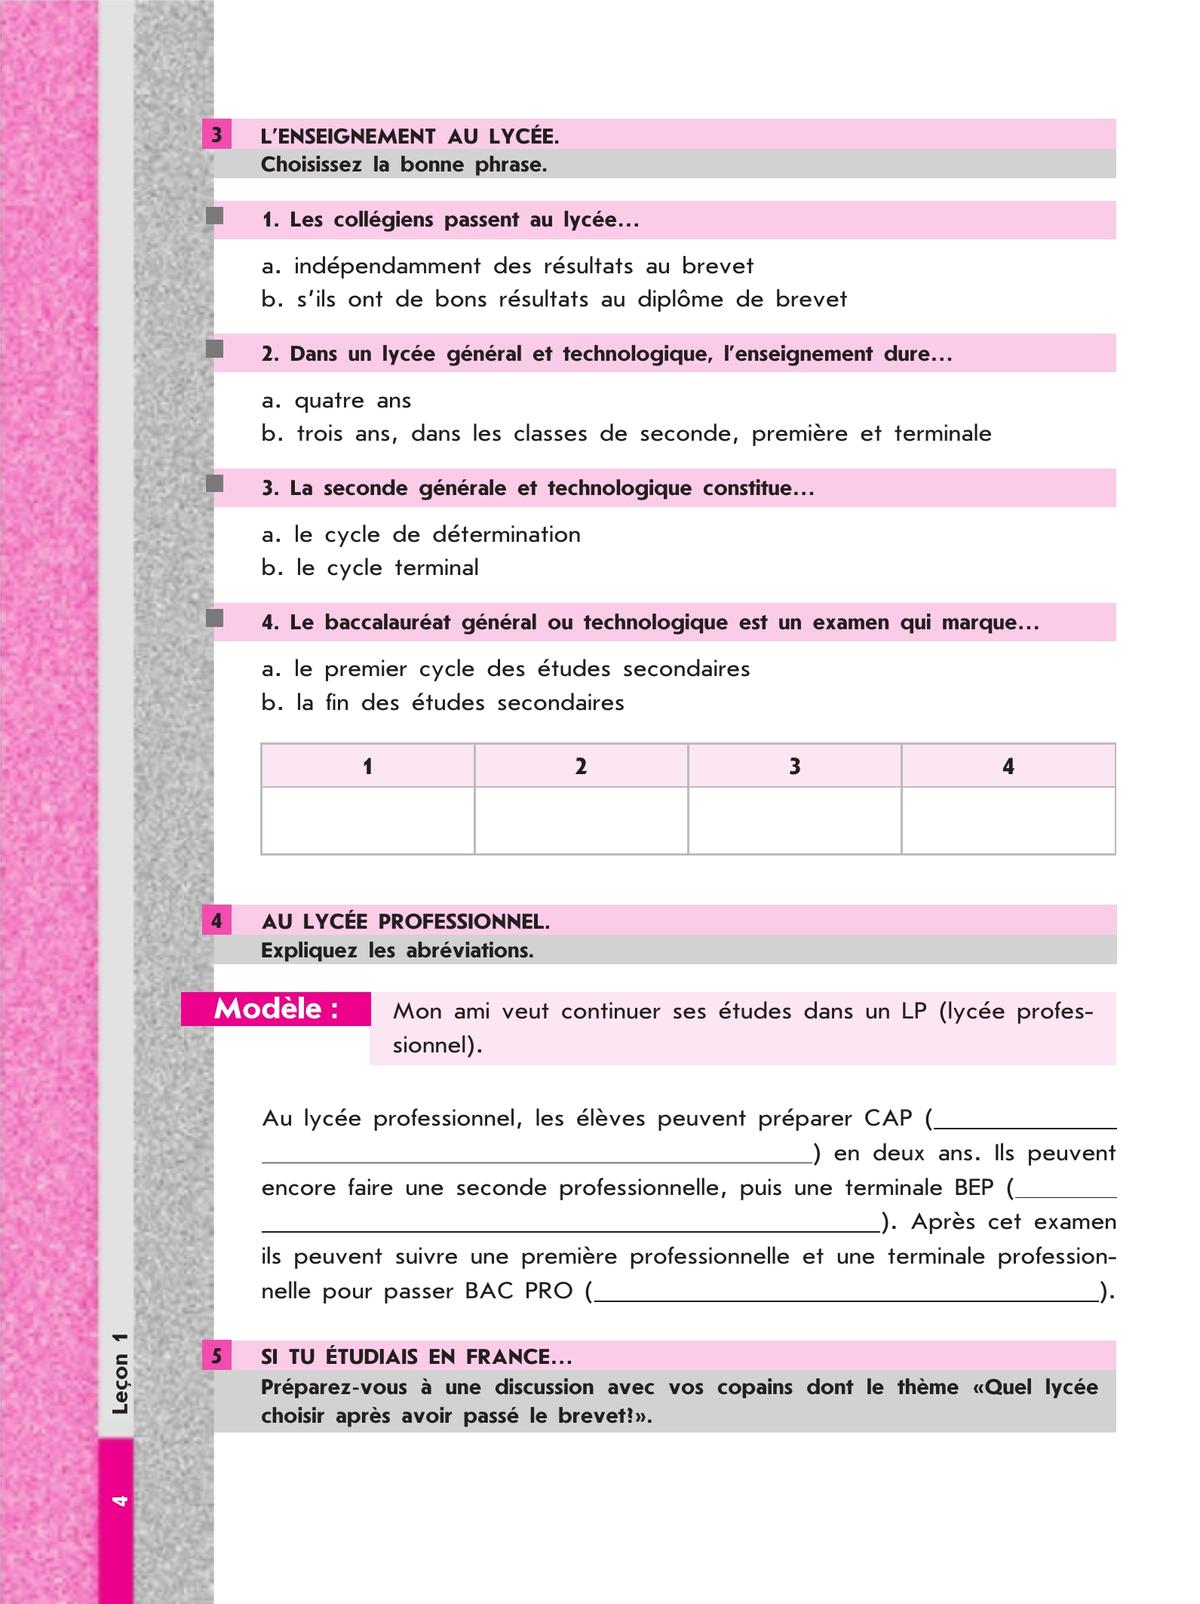 Французский язык. Рабочая тетрадь. 9 класс 9